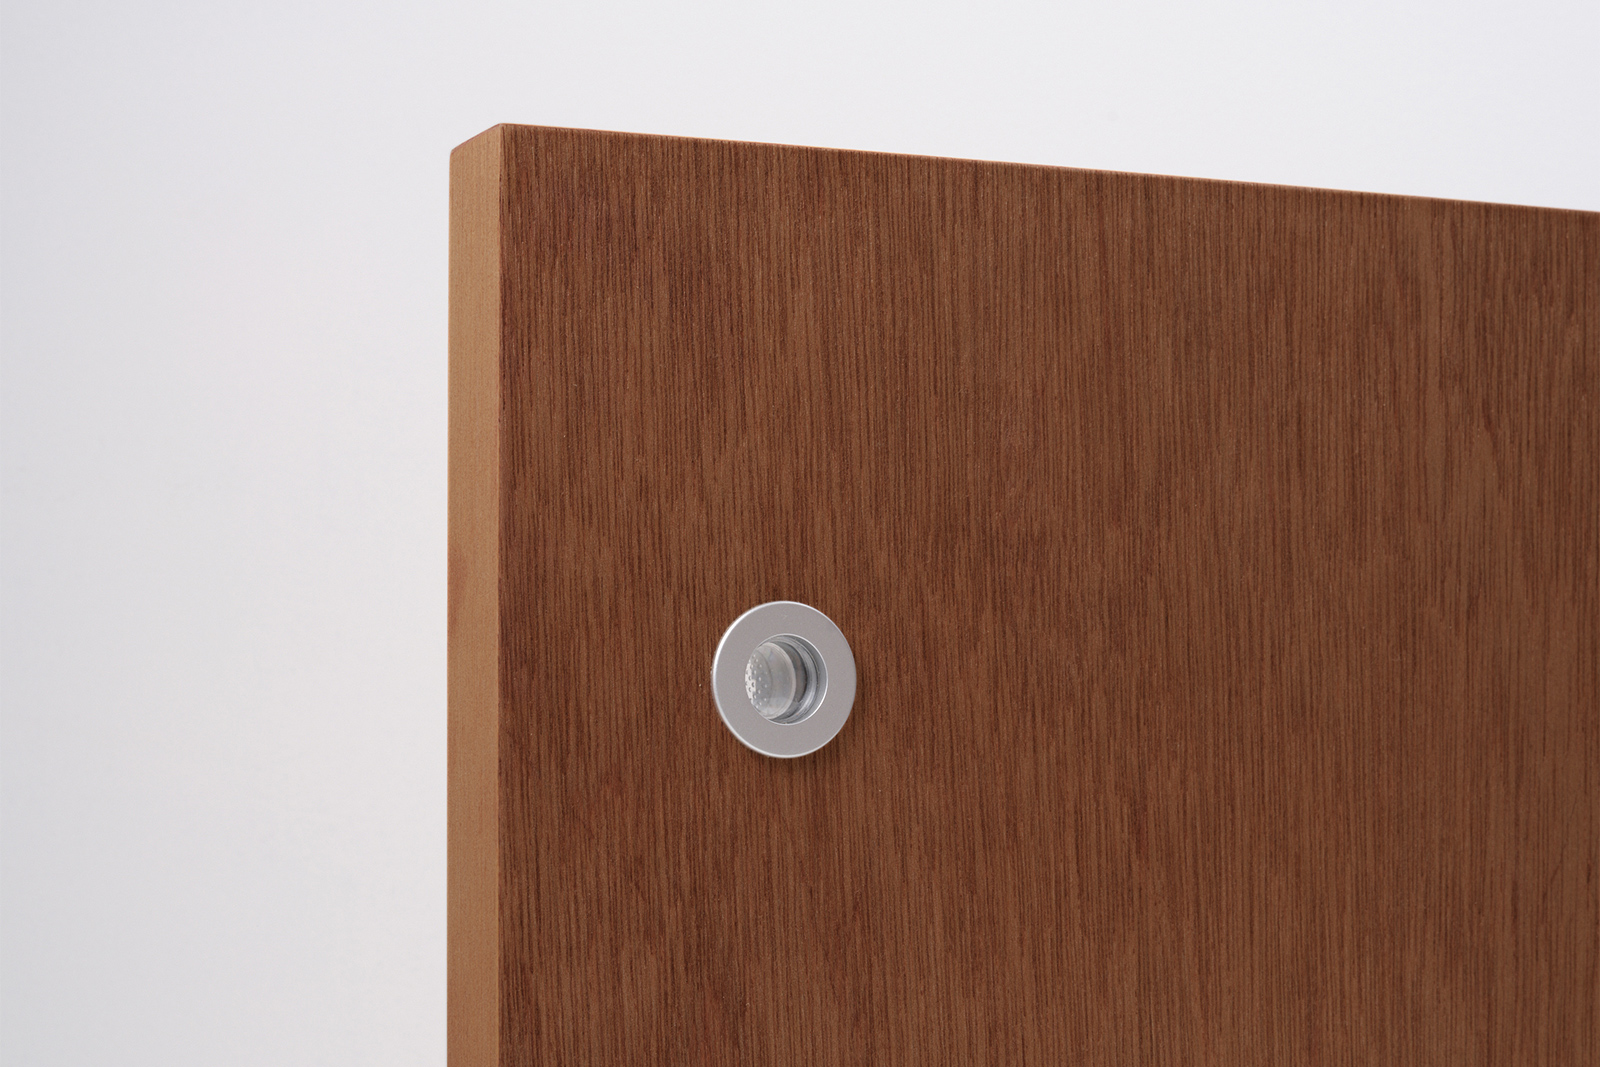 木製ユニットドア 片引き戸 ラワン DW-DR012-05-G191 表示錠を選択すると付属される「明かりとり」